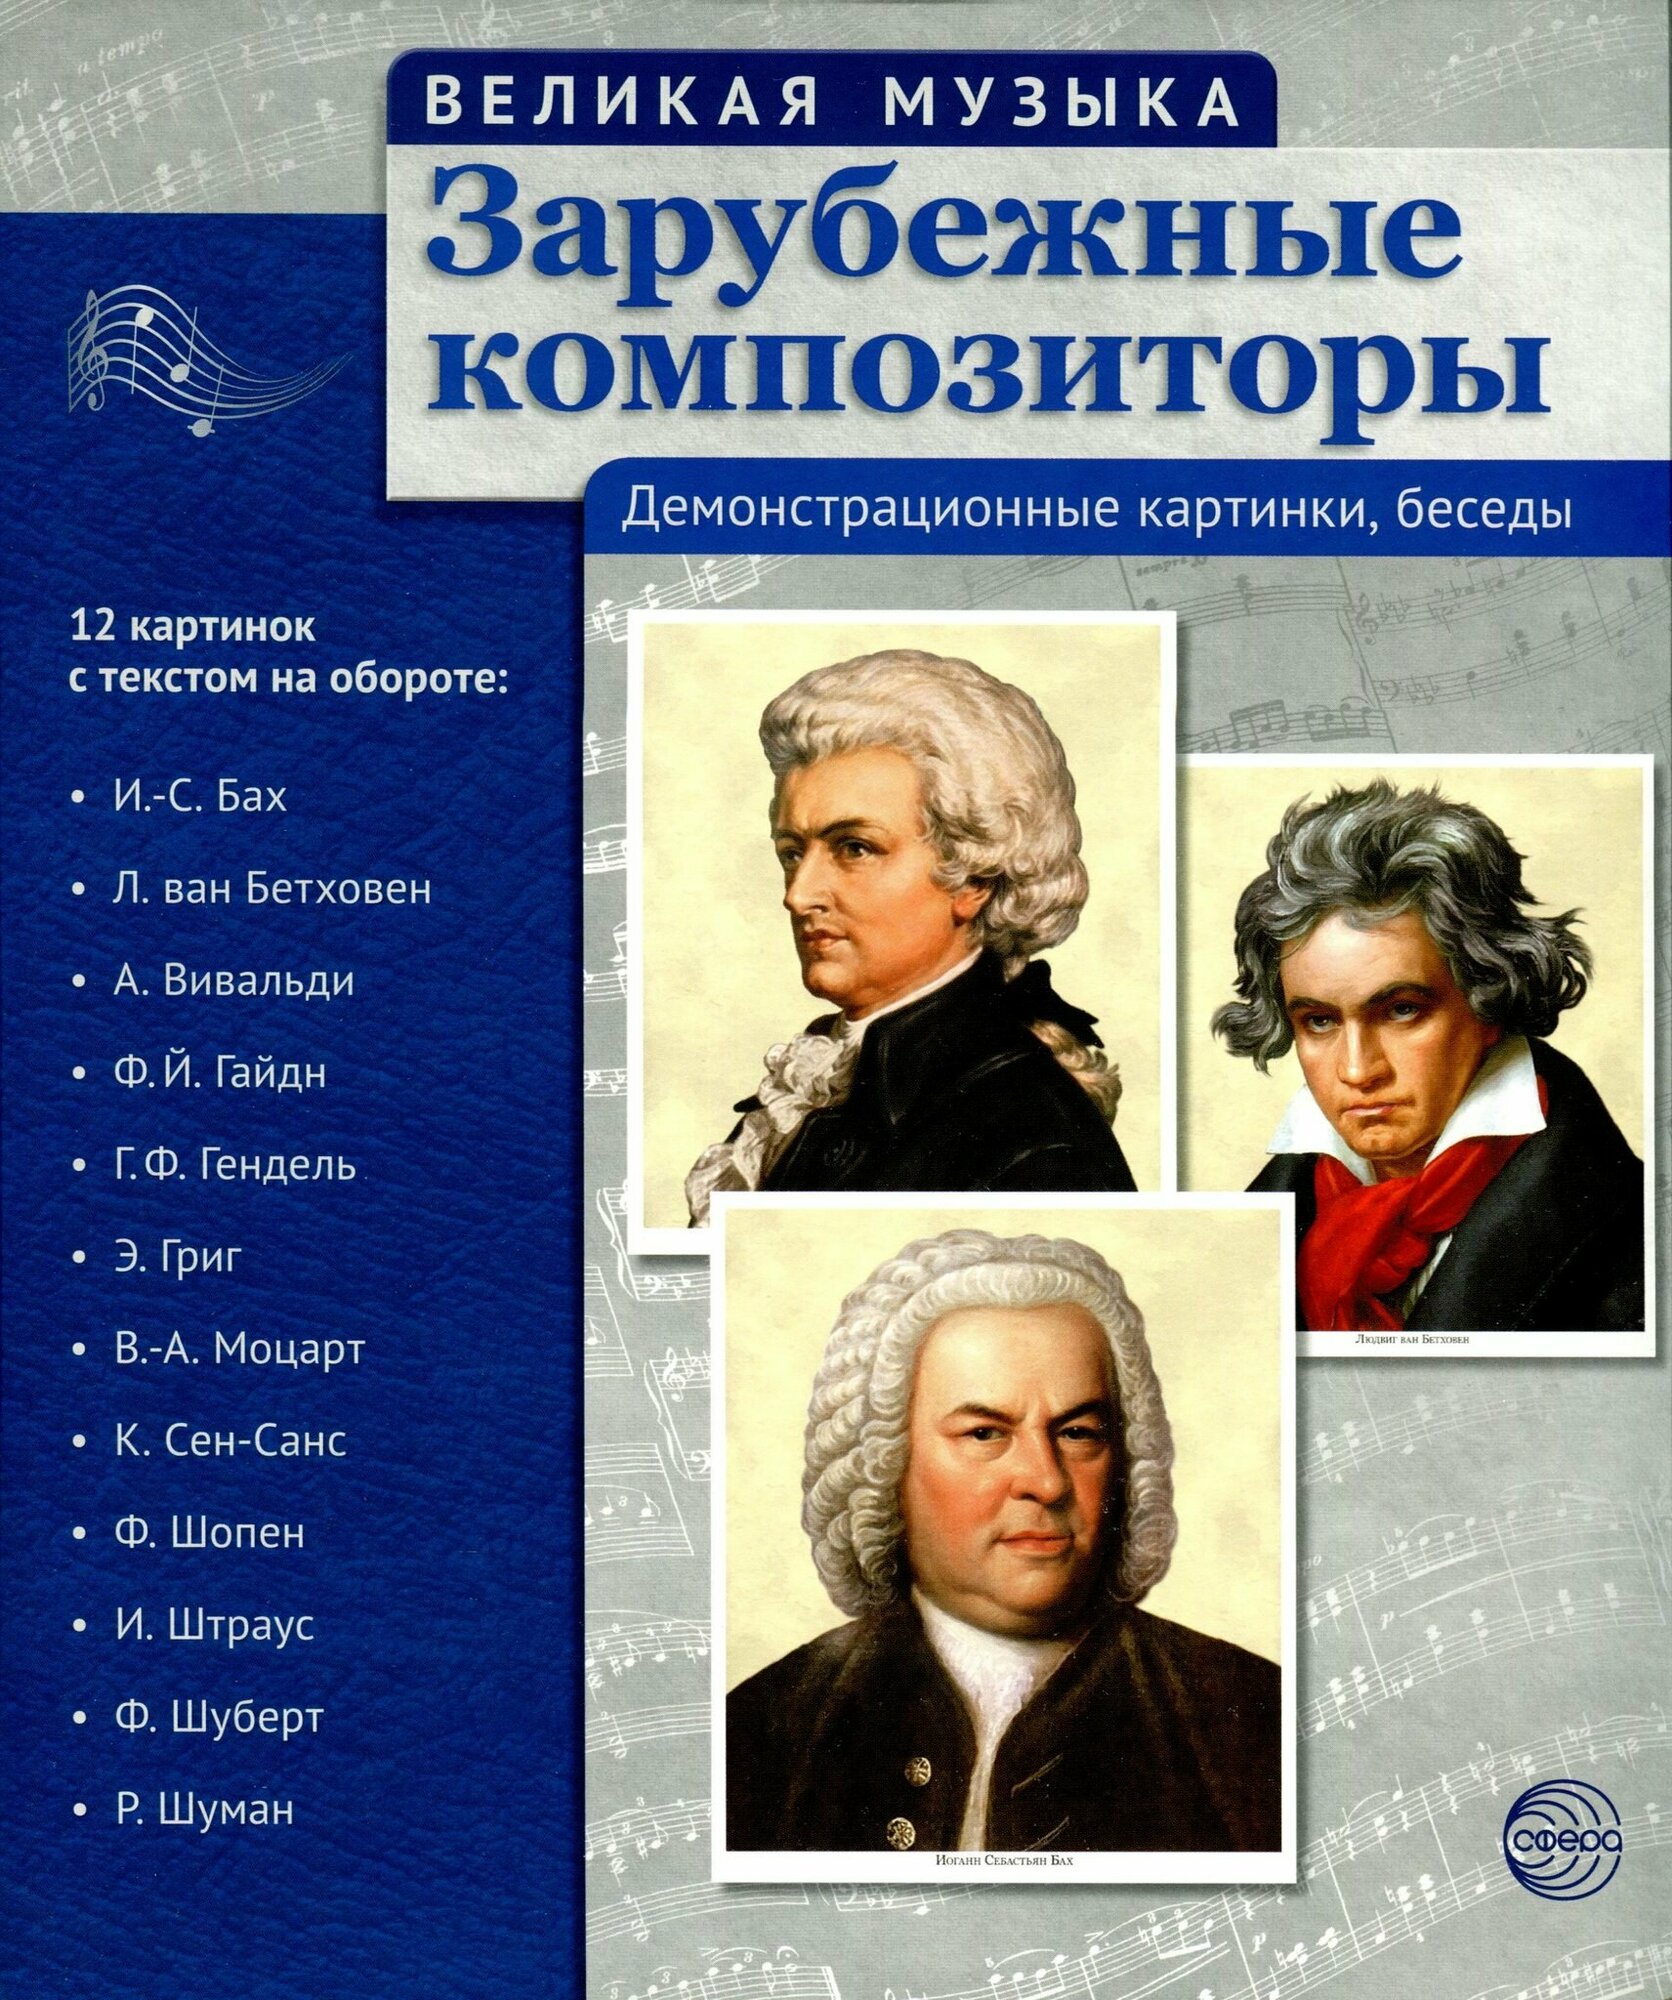 Зарубежные композиторы. 12 демонстрационных картинок с текстом на обороте - фото №6